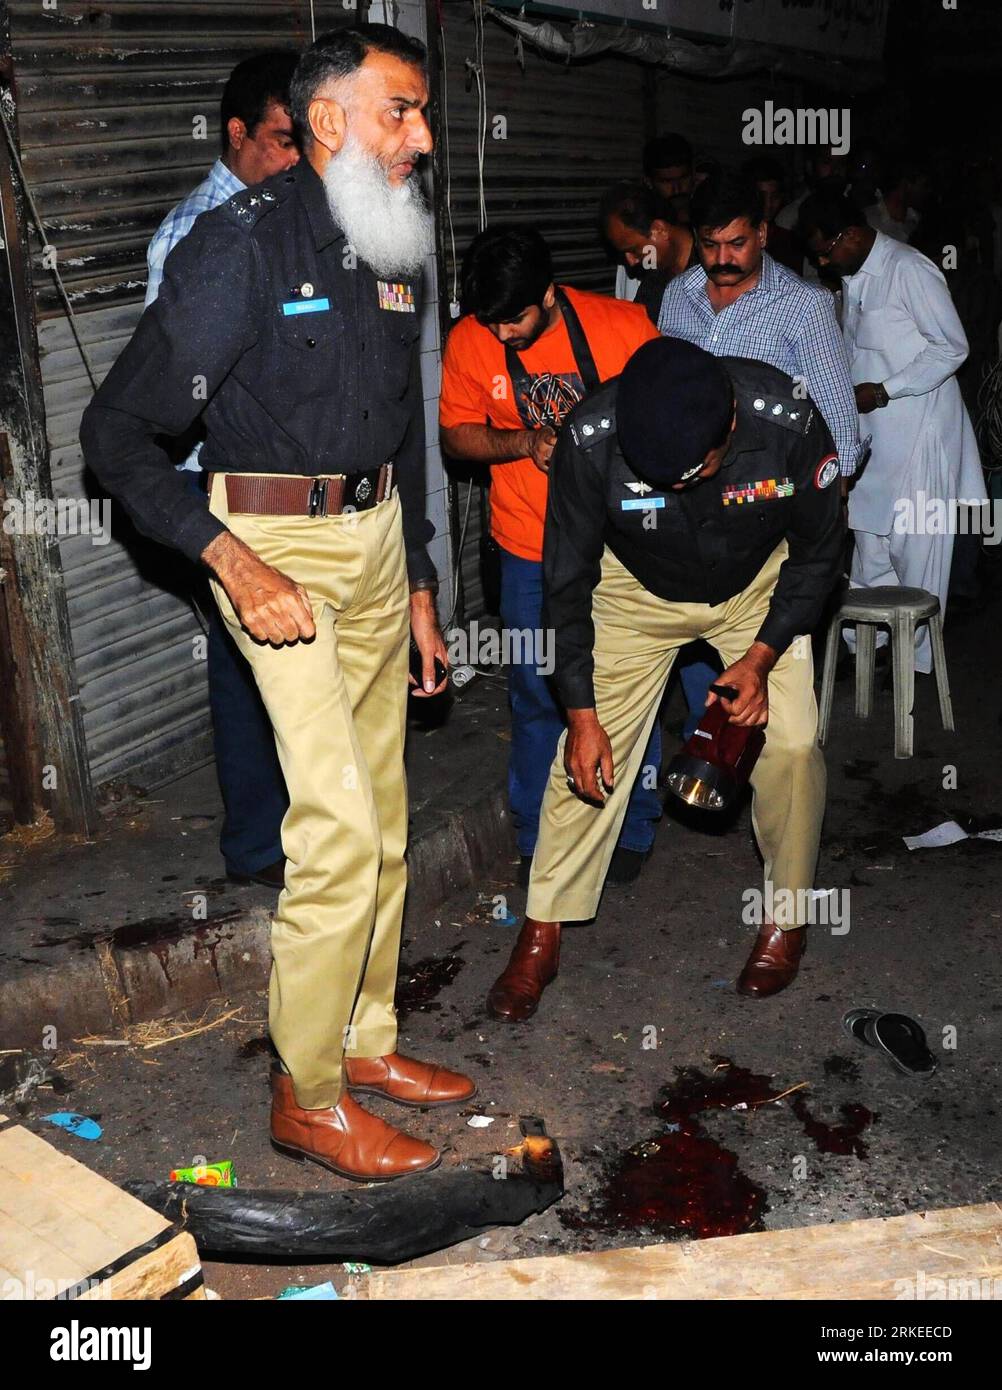 Bildnummer: 55246386 Datum: 07.04.2011 Copyright: imago/Xinhua (110407) -- KARACHI, 7 aprile 2011 (Xinhua) -- Un poliziotto ispeziona il sito dell'esplosione nella città portuale del Pakistan meridionale di Karachi il 7 aprile 2011. Almeno tre persone sono rimaste ferite durante l'attacco della granata a mano a Karachi giovedì sera. (Xinhua/Arshad) PAKISTAN-KARACHI-BLAST PUBLICATIONxNOTxINxCHN Politik Explosion Gewalt kbdig xkg 2011 hoch o0 Granatenangriff Angriff Anschlag Terror Terroranschlag Polizei Polizist Blut Blutspur Bildnummer 55246386 Data 07 04 2011 Copyright Imago XINHUA Karachi 7 aprile 2011 XINHUA Poli PUBLICATIONI Foto Stock